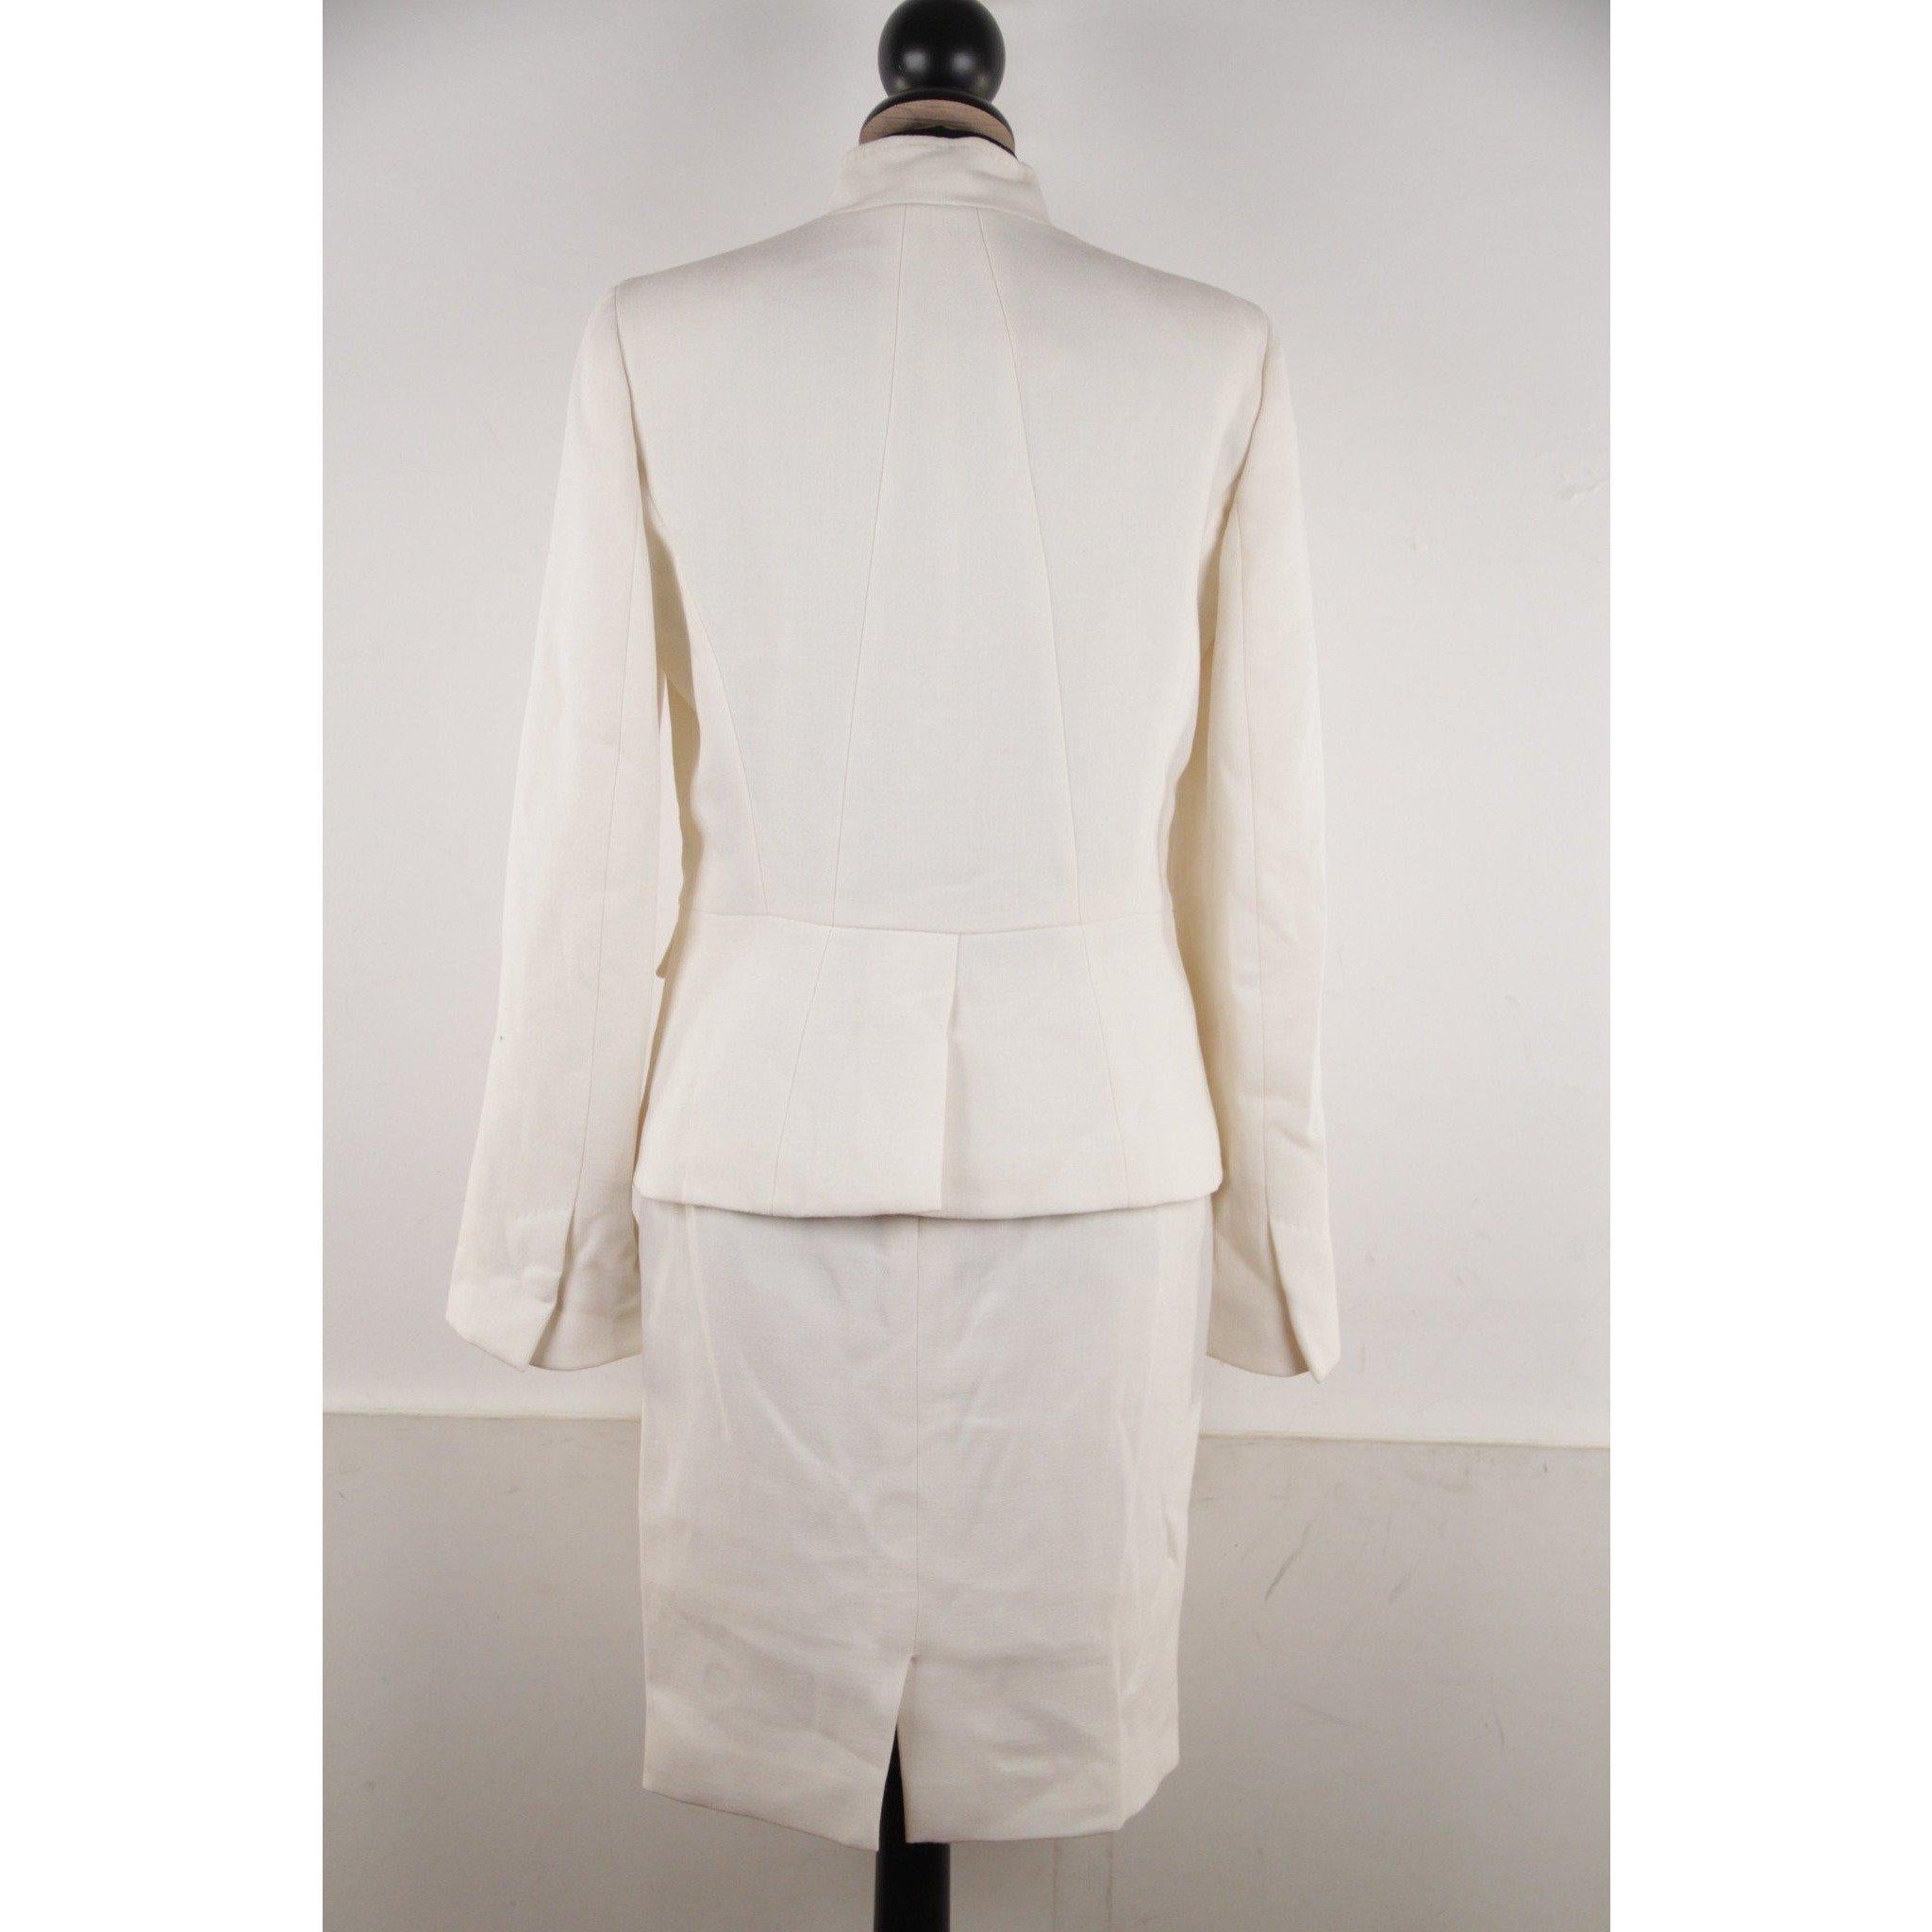 Versace Ivory 3 Pieces Set Blazer Suit Skirt Trousers Size 40 IT 1